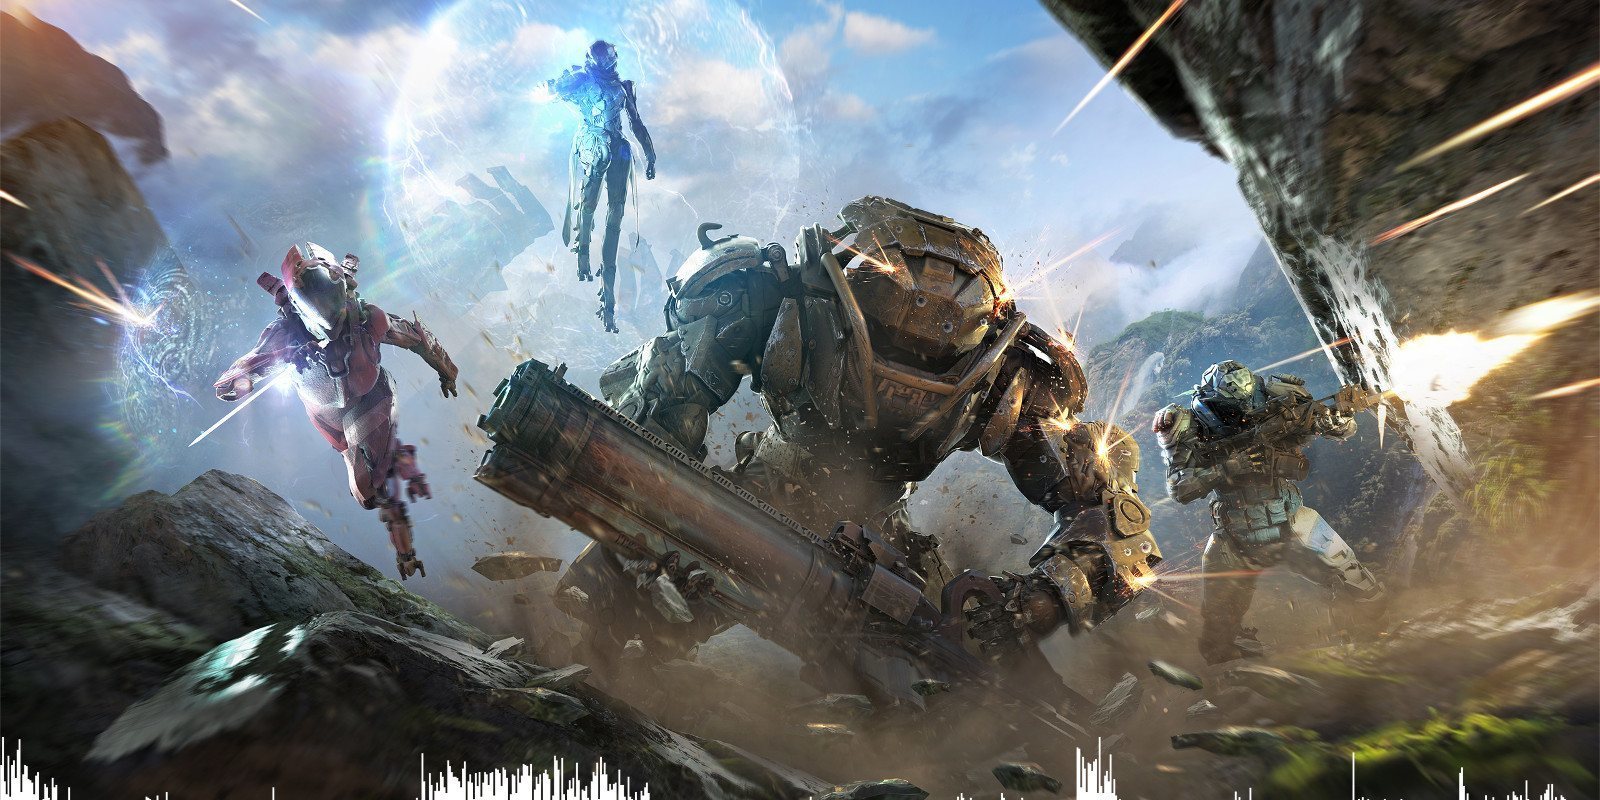 'Un juego online como 'Anthem' puede tener una buena narrativa', según BioWare